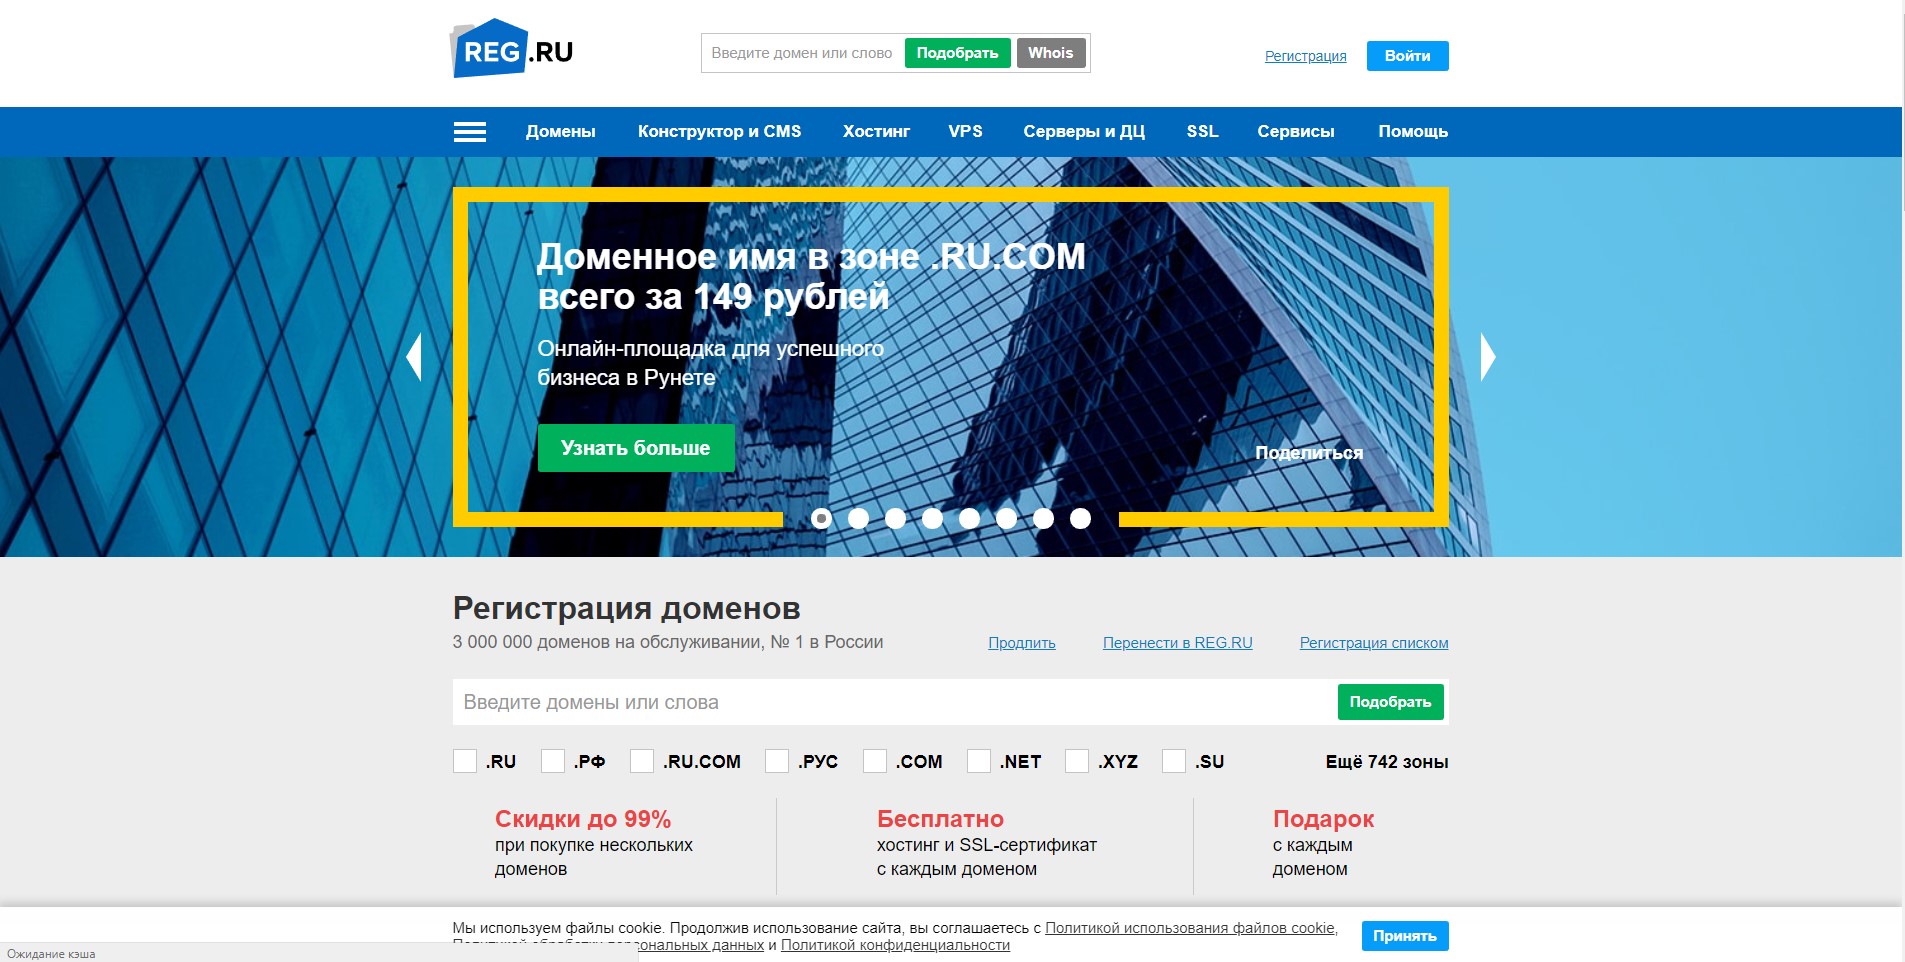 New reg ru. Регистрация домена и хостинг сайта. Домен хостинг и SSL. Бесплатный домен.